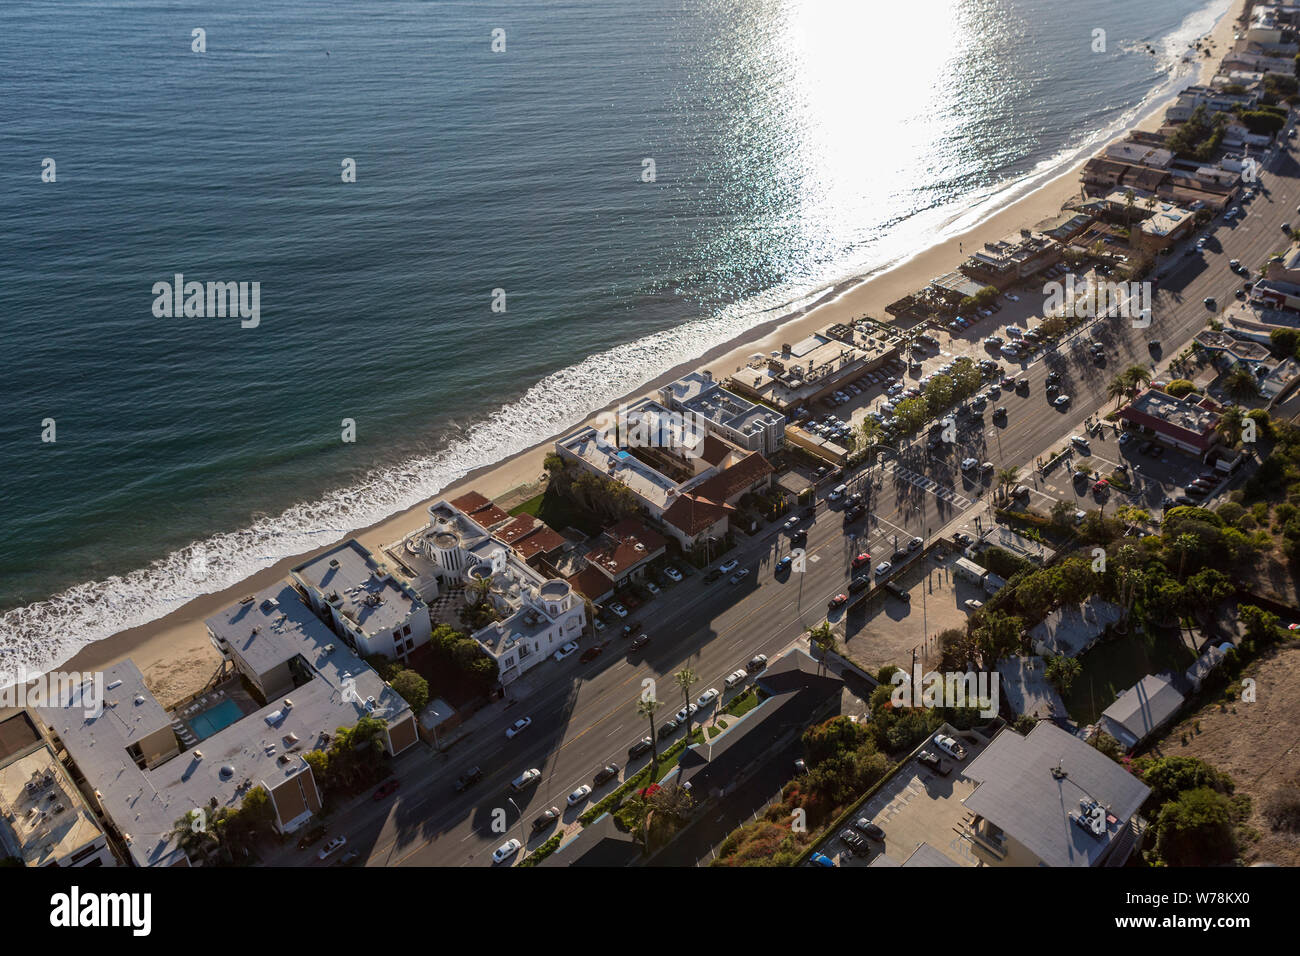 Vue aérienne de l'Autoroute de la côte Pacifique au nord de Los Angeles et Santa Monica dans la ville pittoresque de Malibu, Californie. Banque D'Images